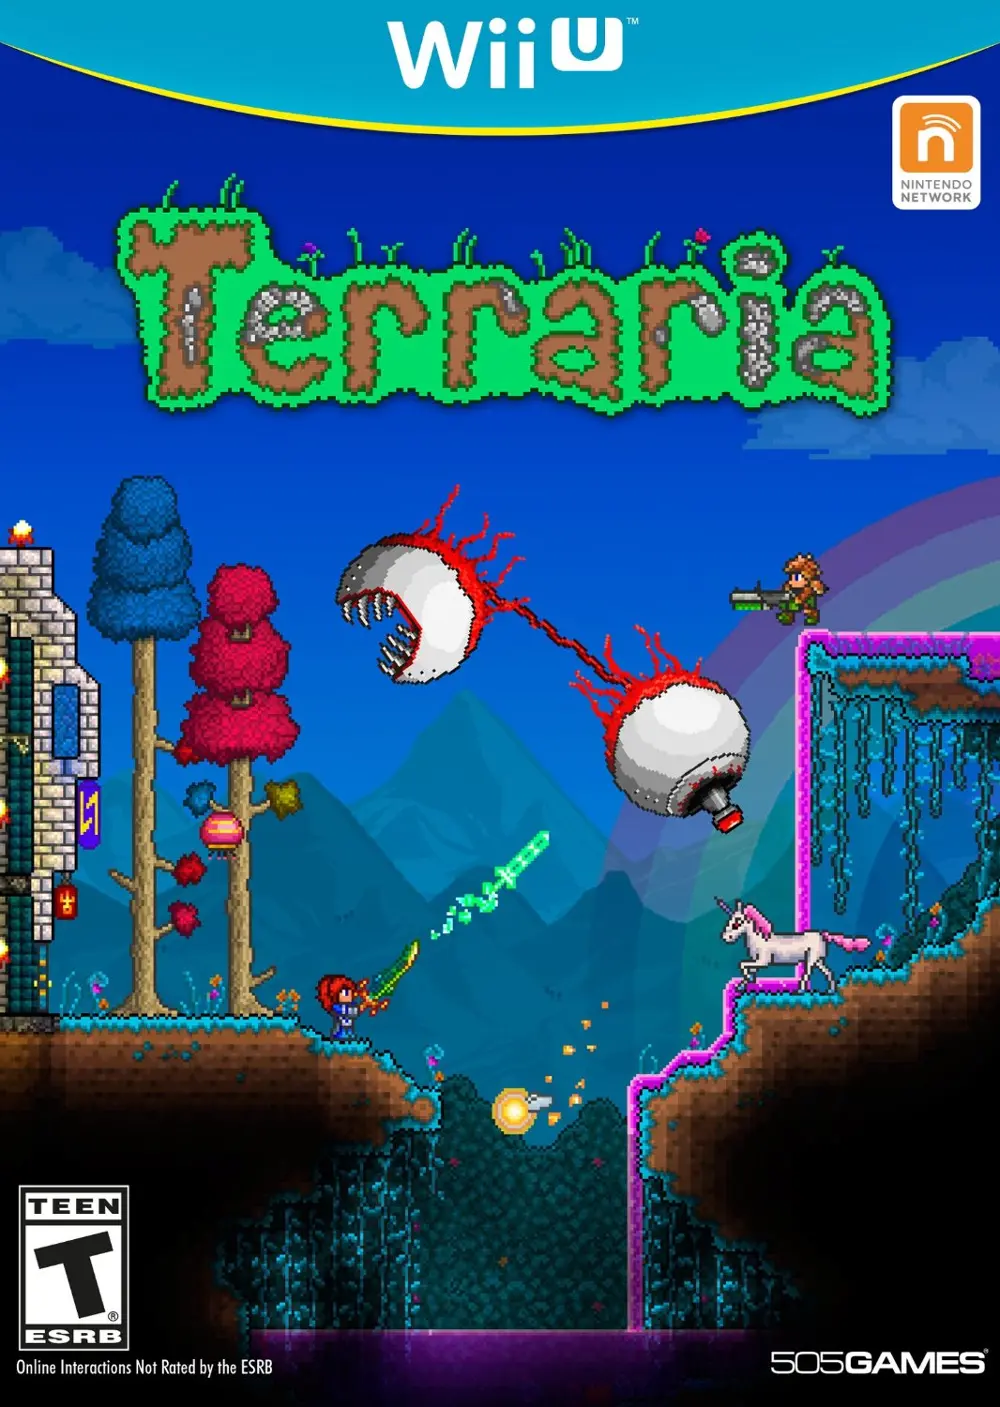 WIIU-TERRARIA Terraria - Wii U-1